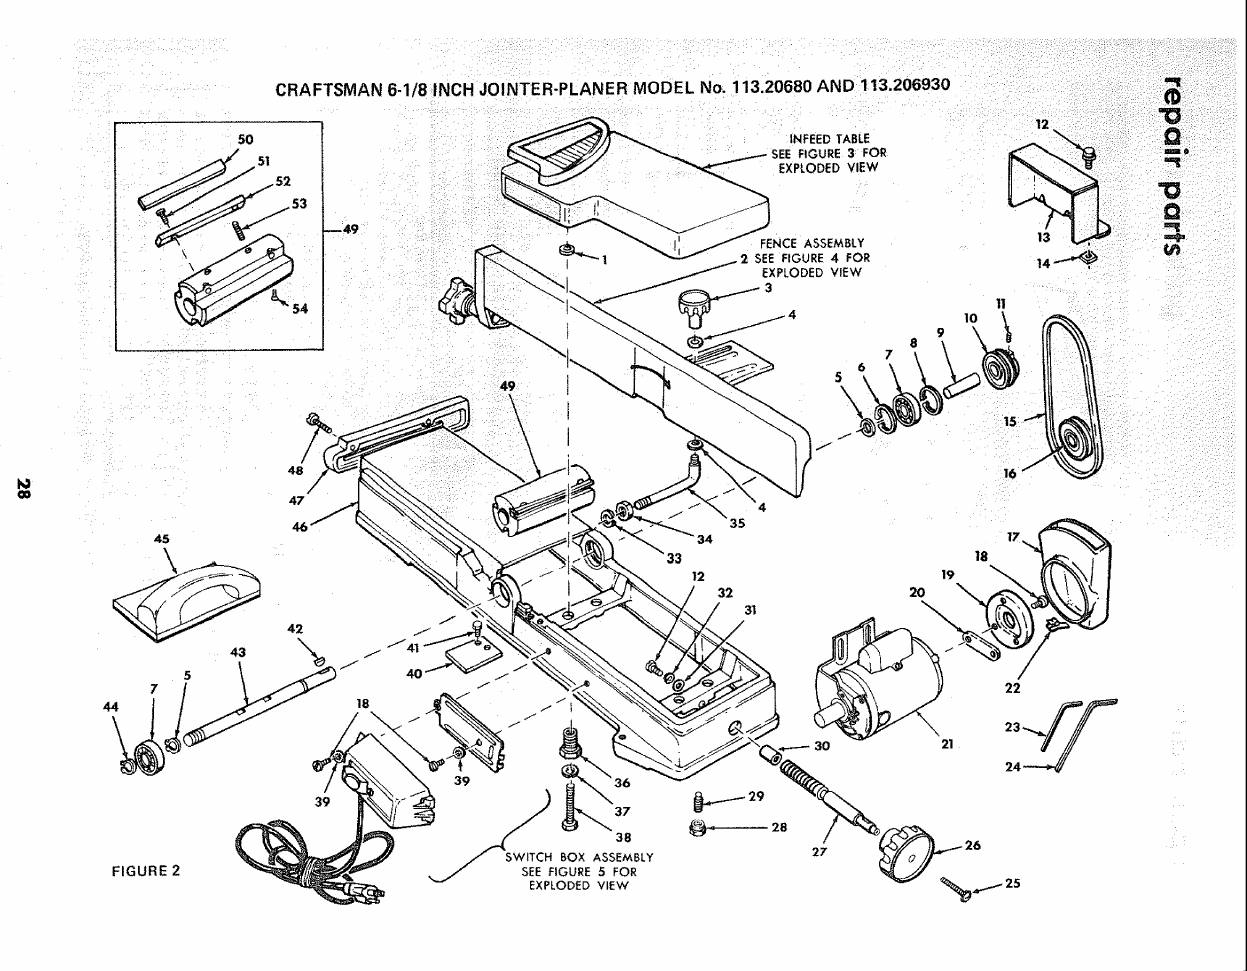 Craftsman Jointer 113.206932 Manual Download